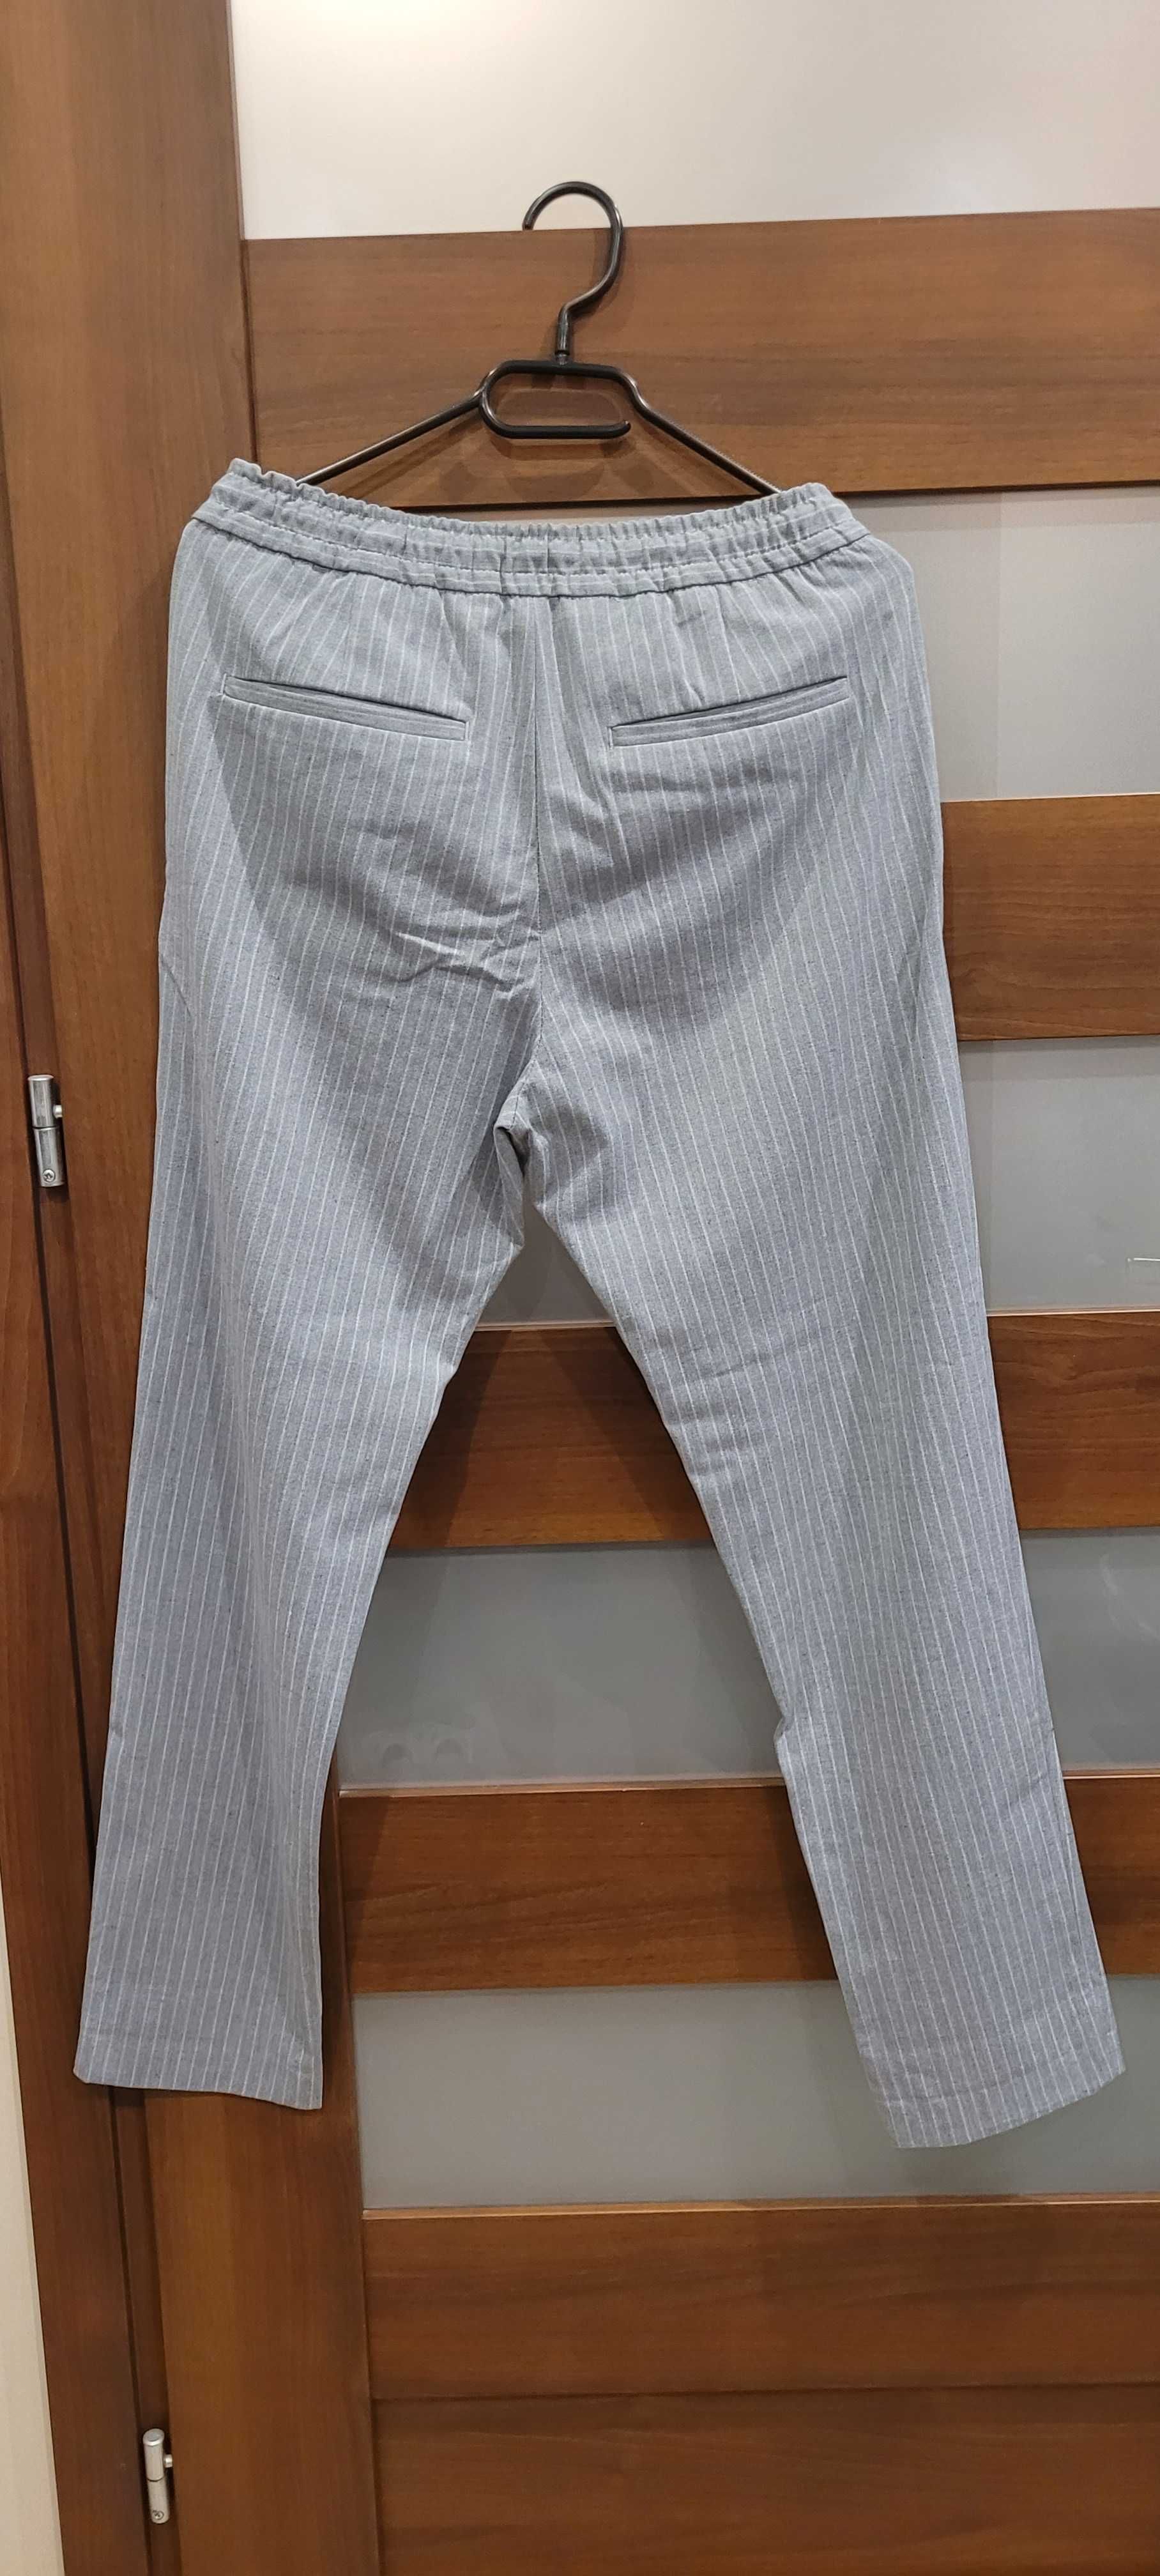 Spodnie typu jogger ZARA w rozmiarze S